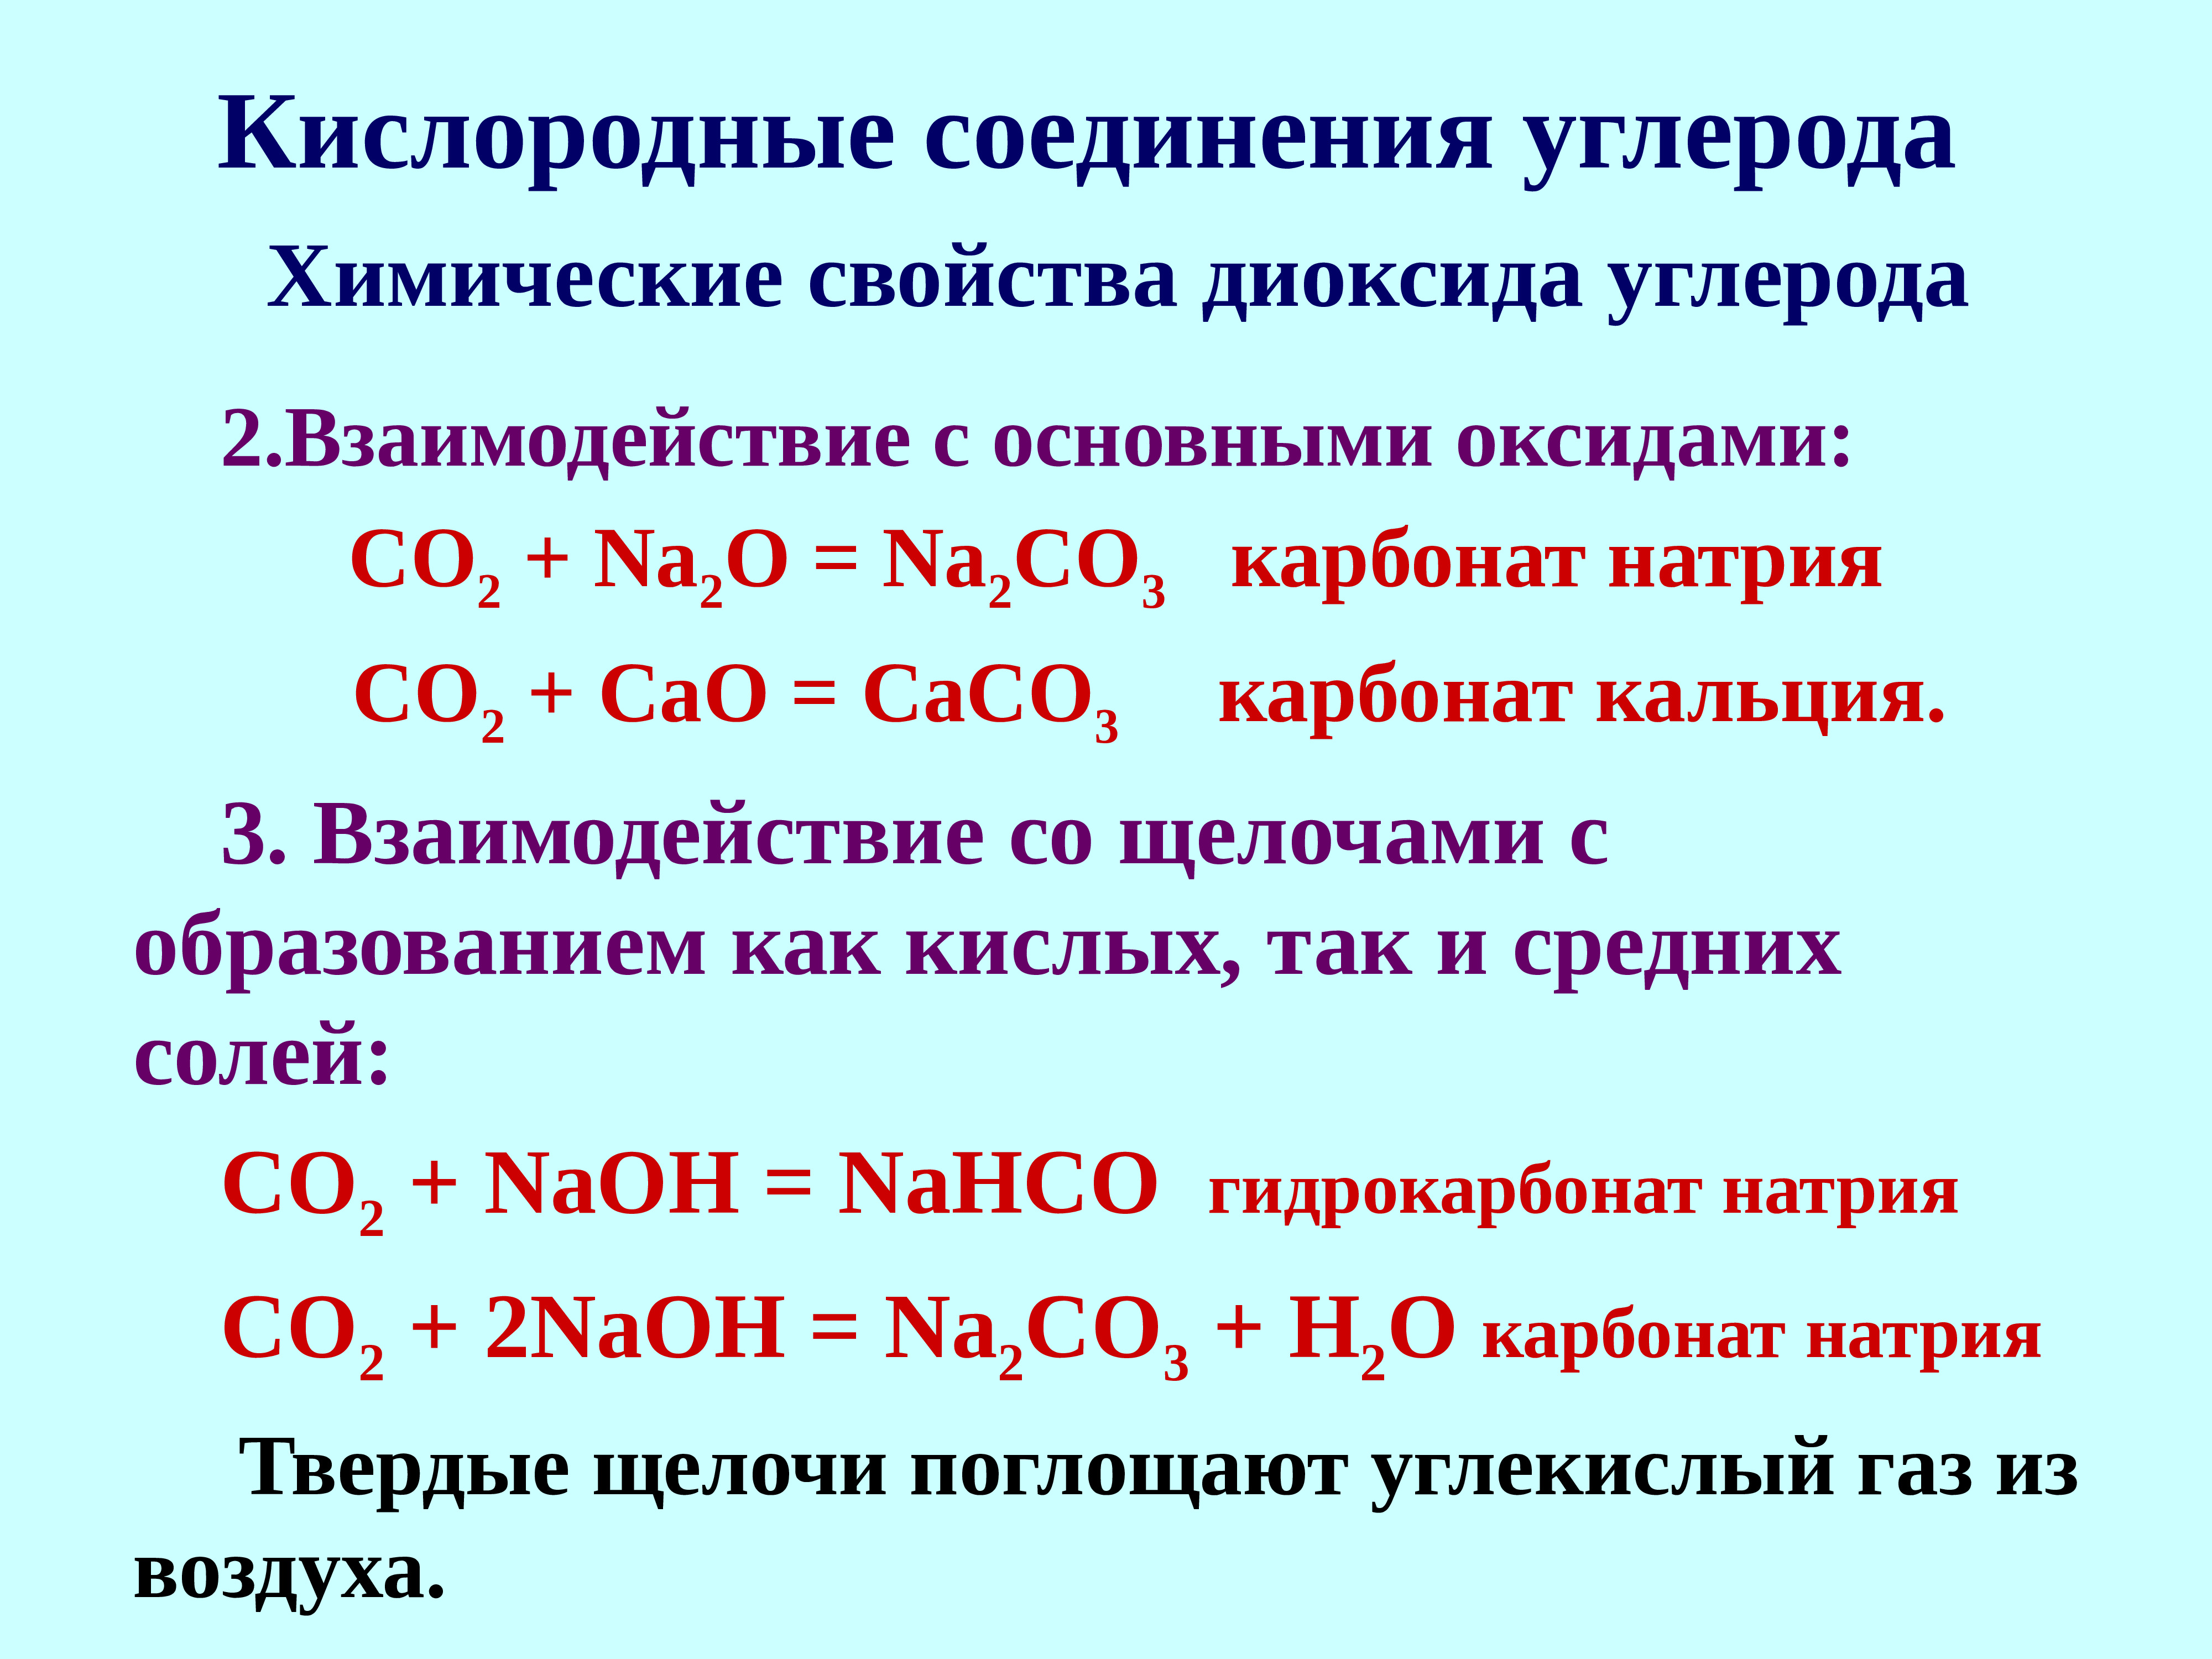 Гидрокарбонат натрия и гидрокарбонат кальция реакция. Кислородные соединения. Кислородные соединения углерода. Карбонат кальция в гидрокарбонат кальция. Карбонат кальция и углекислый ГАЗ.